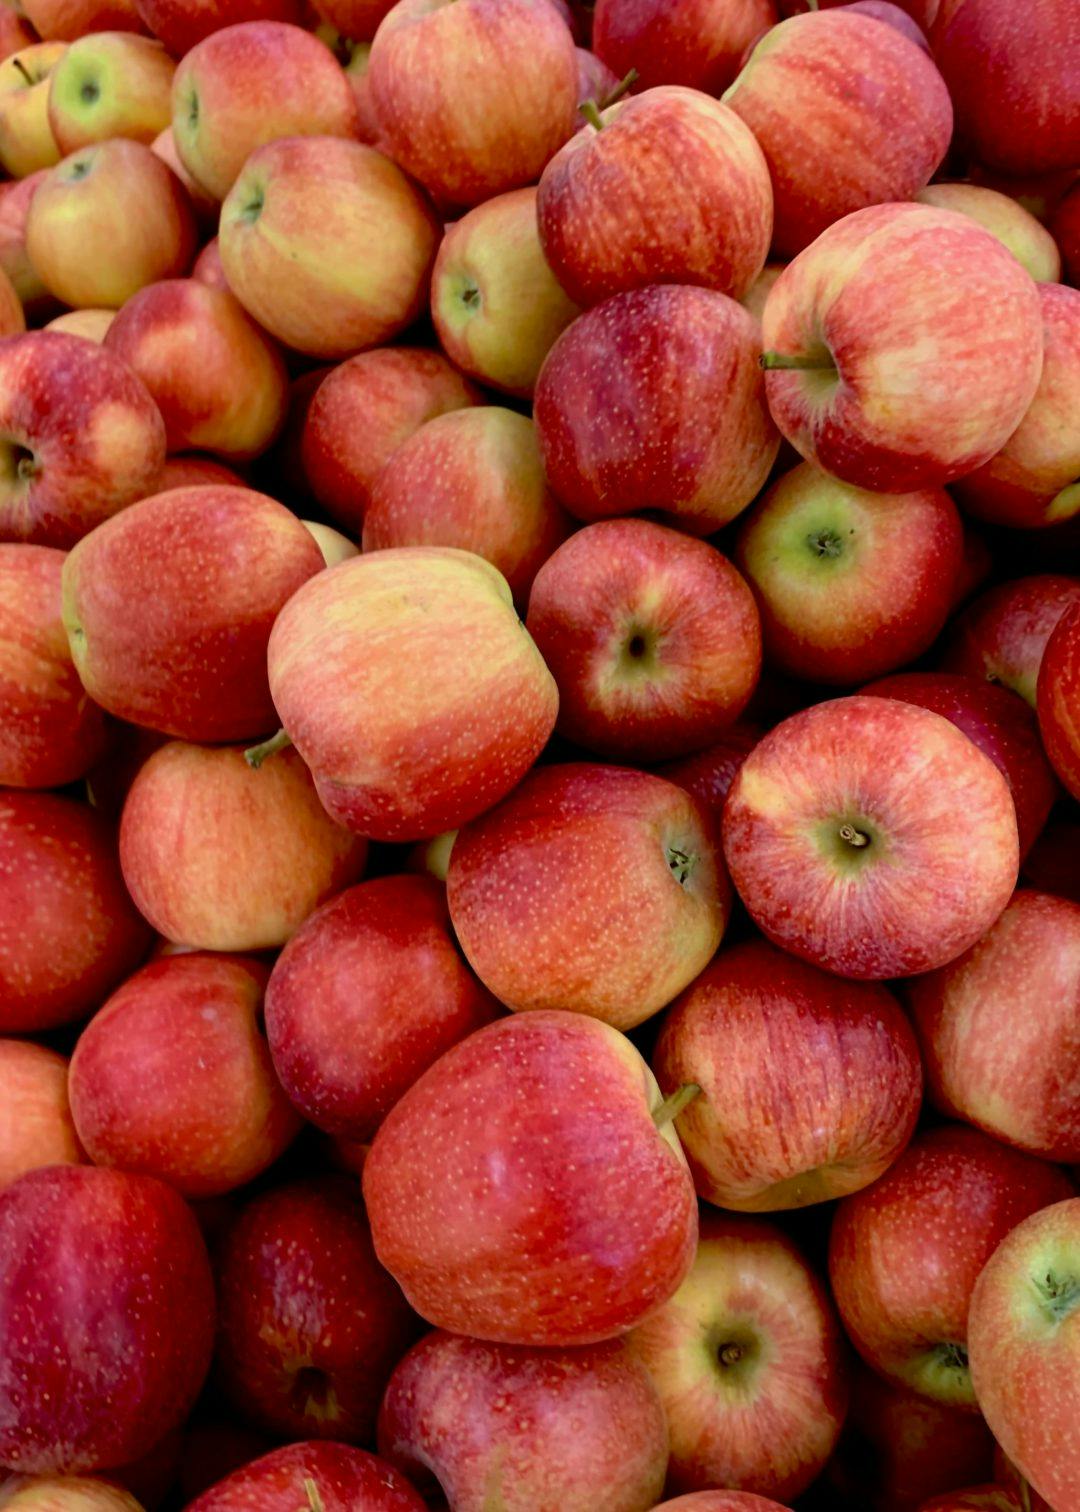 A bunch of apples in Warren